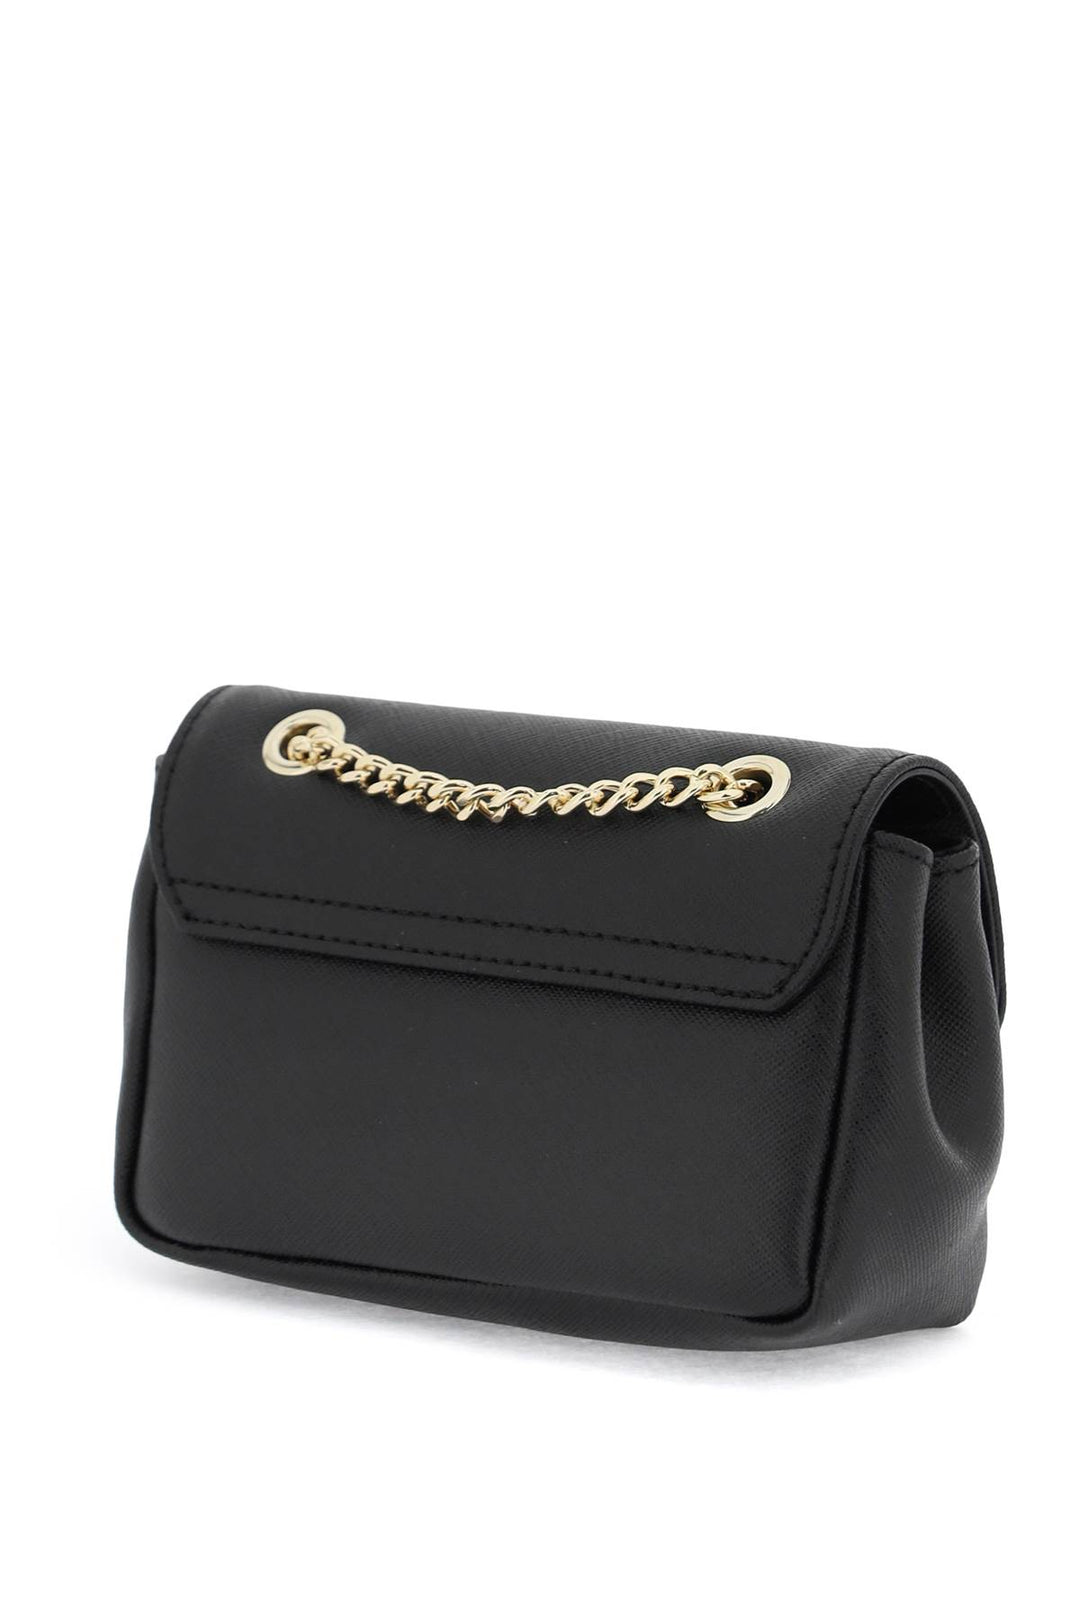 Vivienne Westwood Leather Mini Bag   Nero